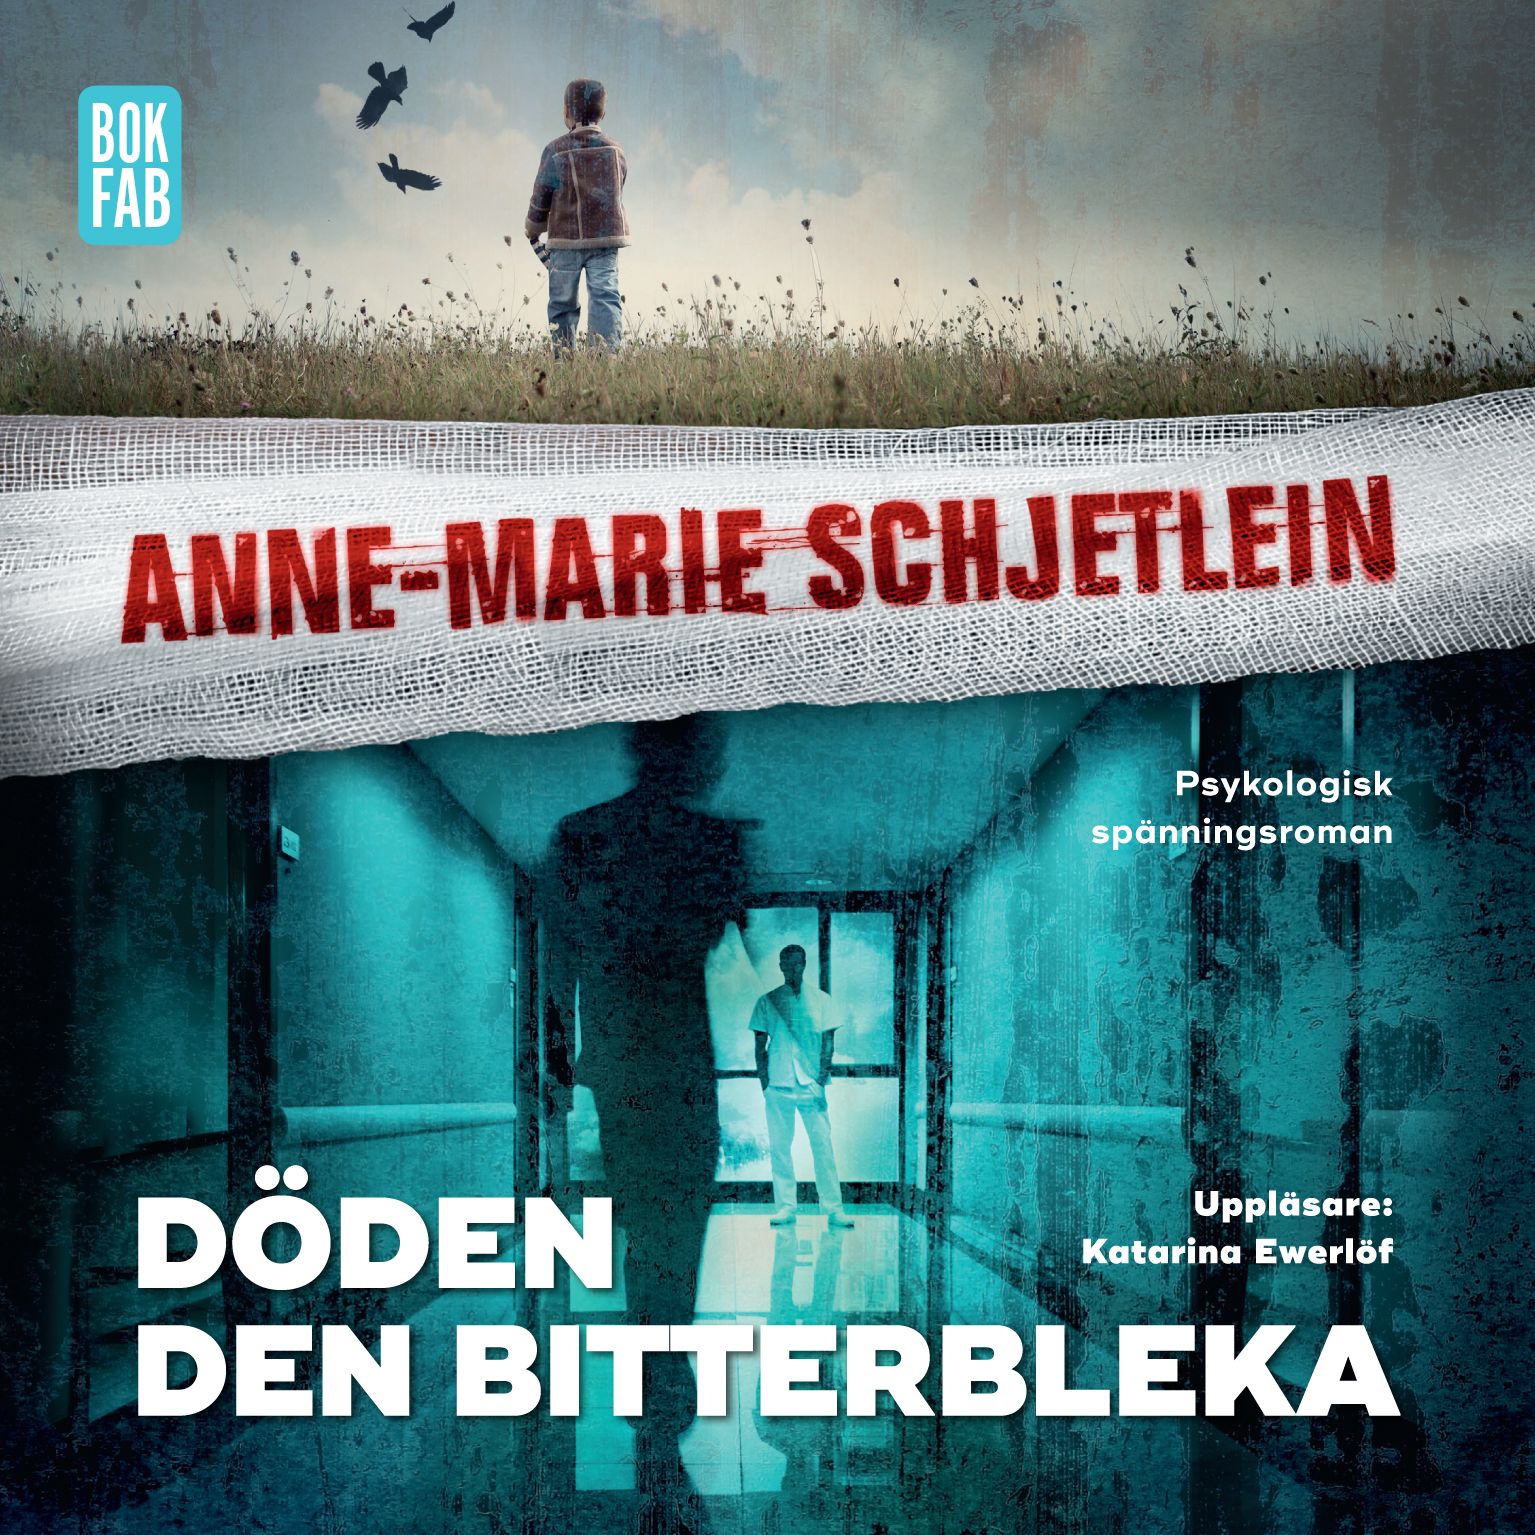 Döden den bitterbleka, audiobook by Anne-Marie Schjetlein